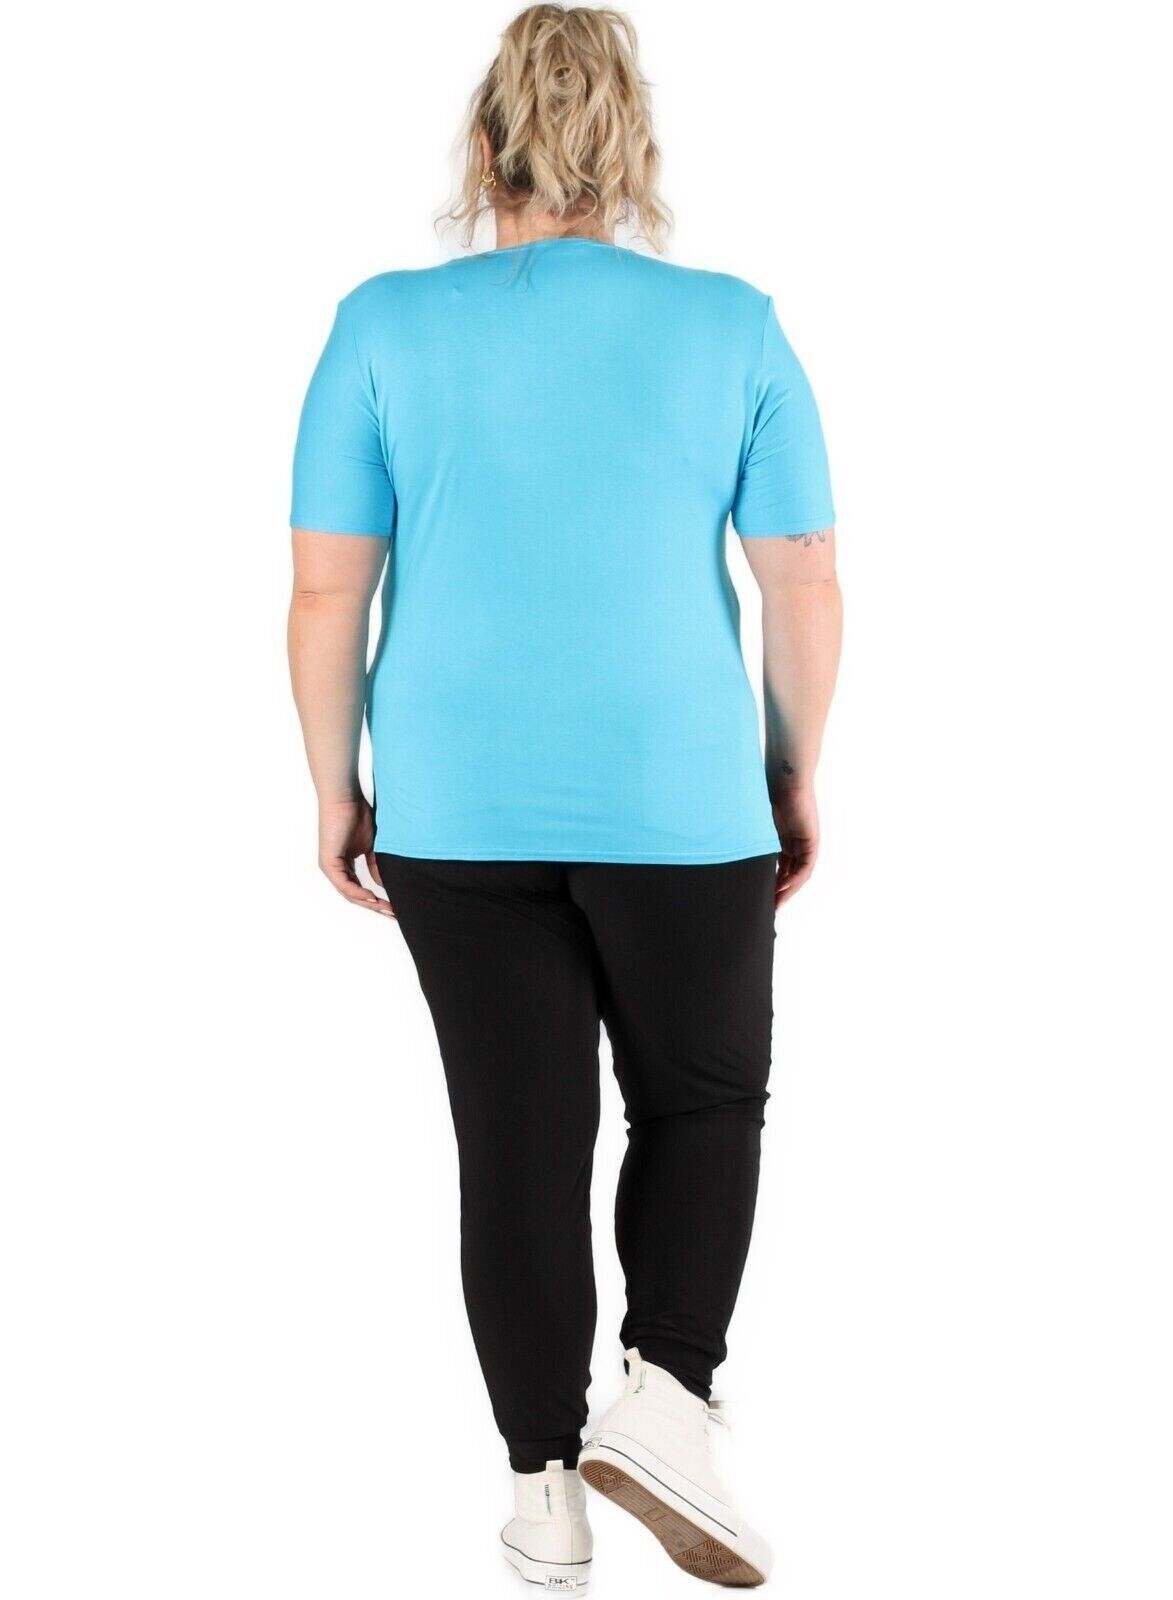 Magna - Damen Shirt Tunika - Basic Shirt Lagenlook - Türkis - 48/50